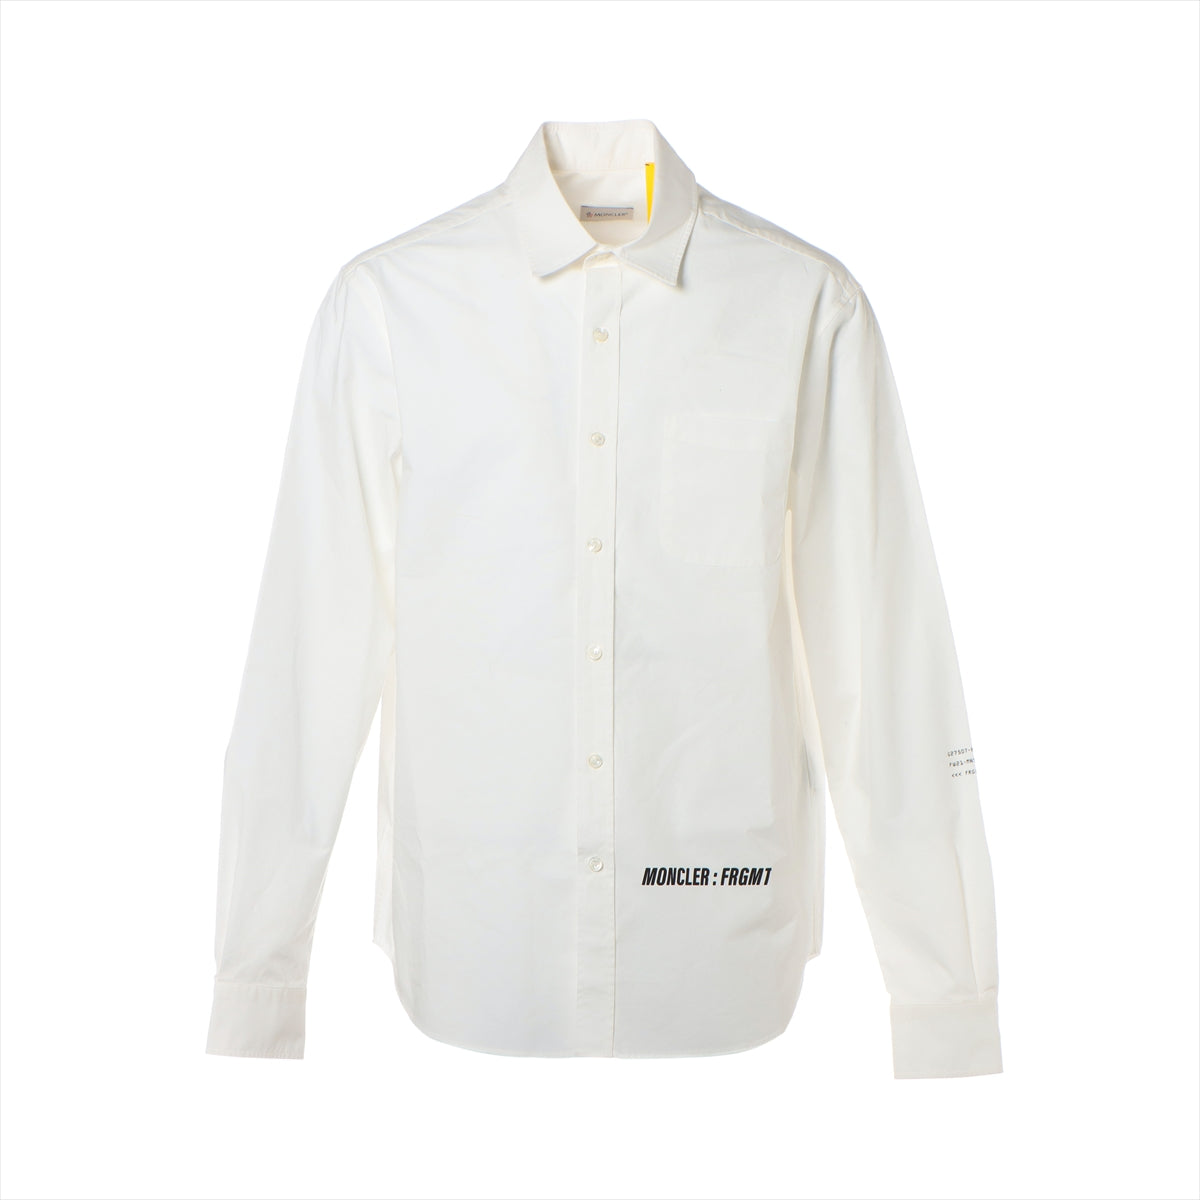 Moncler Genius Fragment 21 years Cotton Shirt 3 Men's White  HIROSHI FUJIWARA